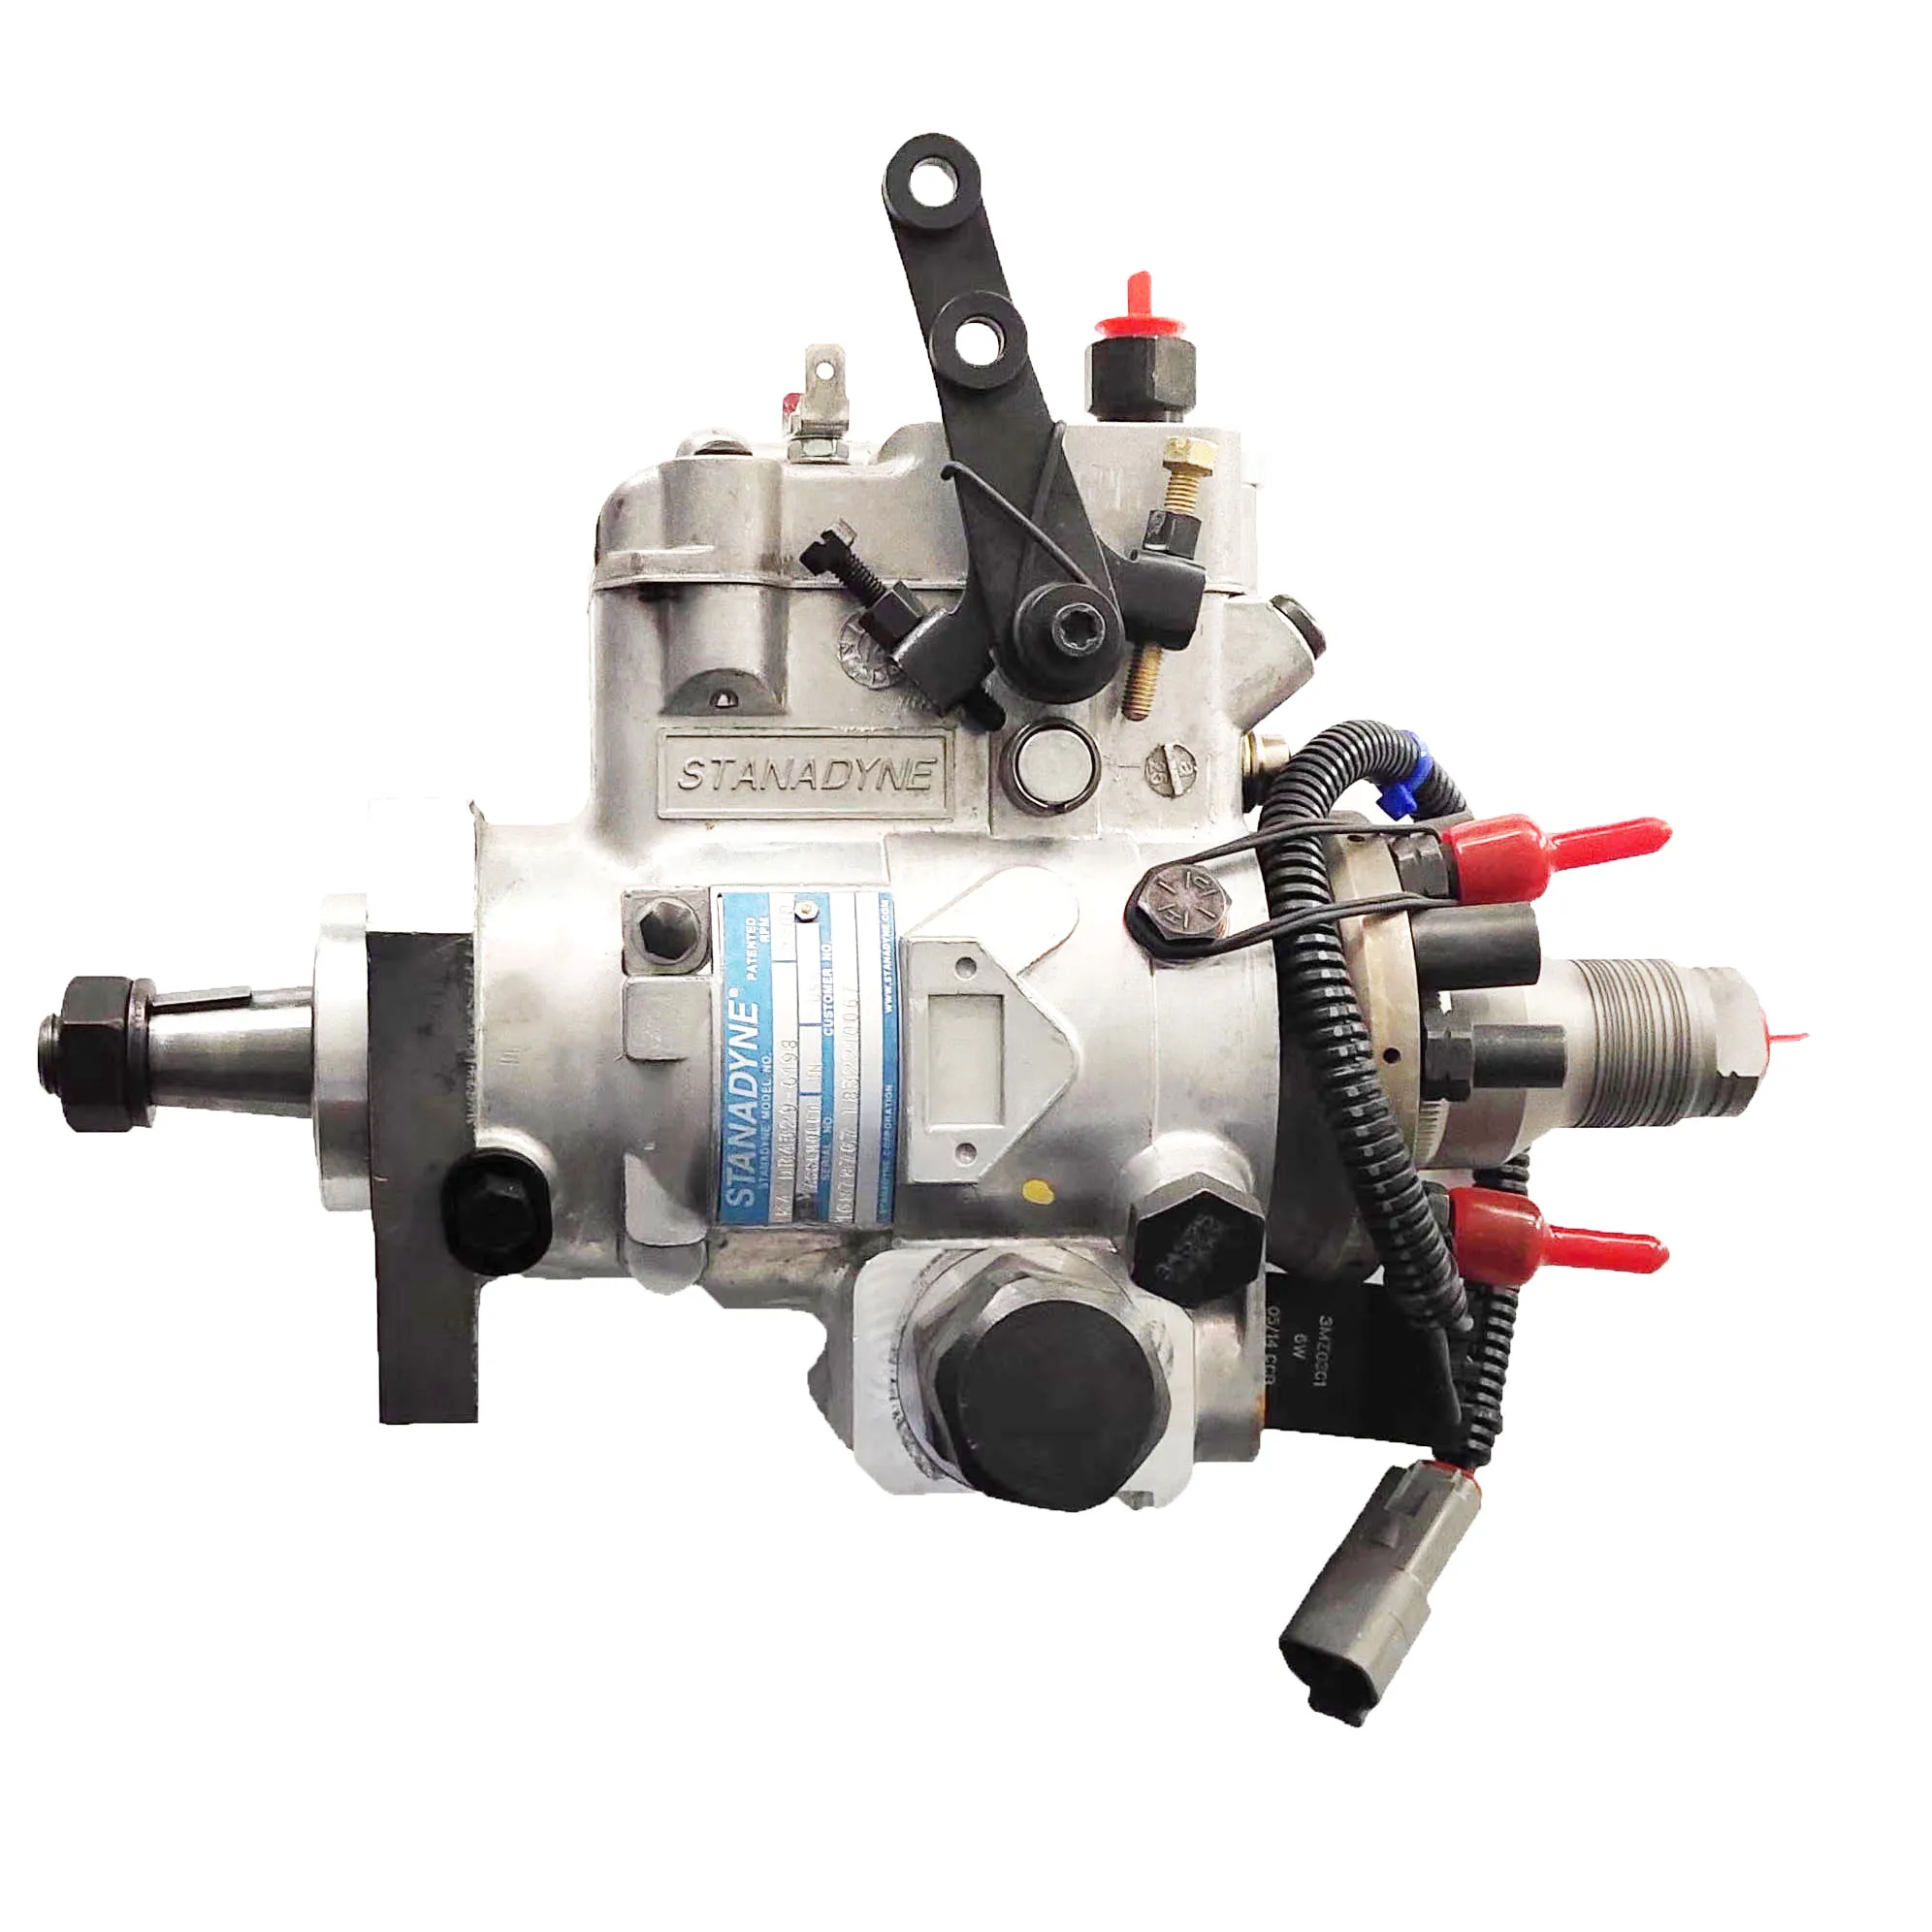 Db4427-5111 2643u206z Fuel Injection Pump For Perkins - Fuel Pumps 